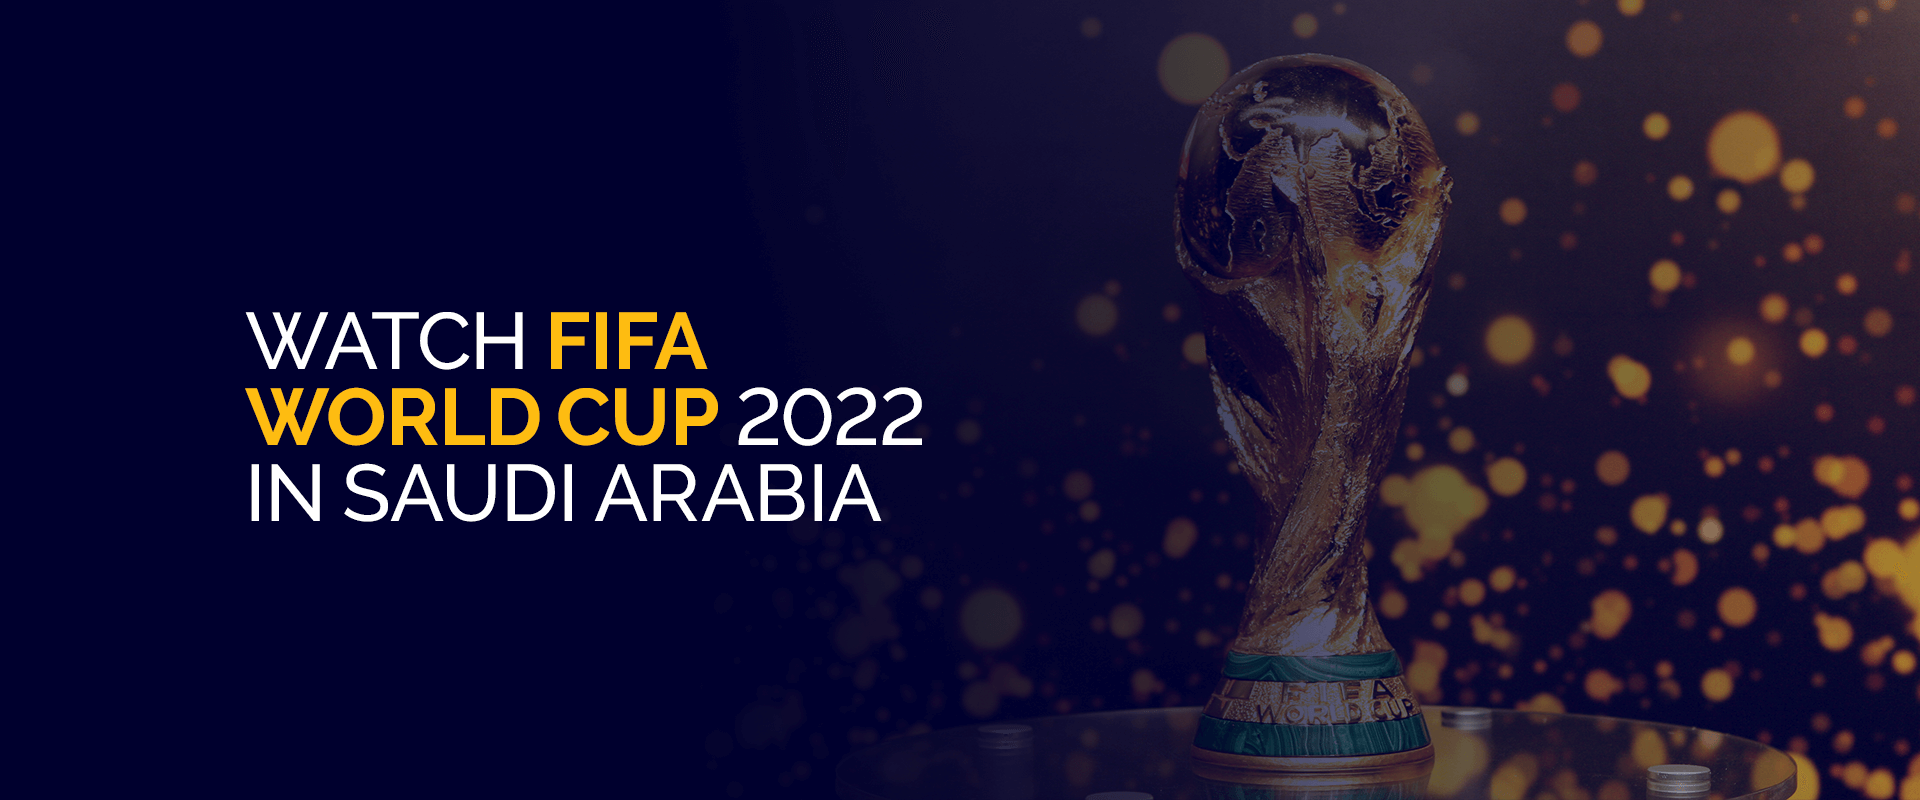 Watch FIFA World Cup 2022 in Saudi Arabia